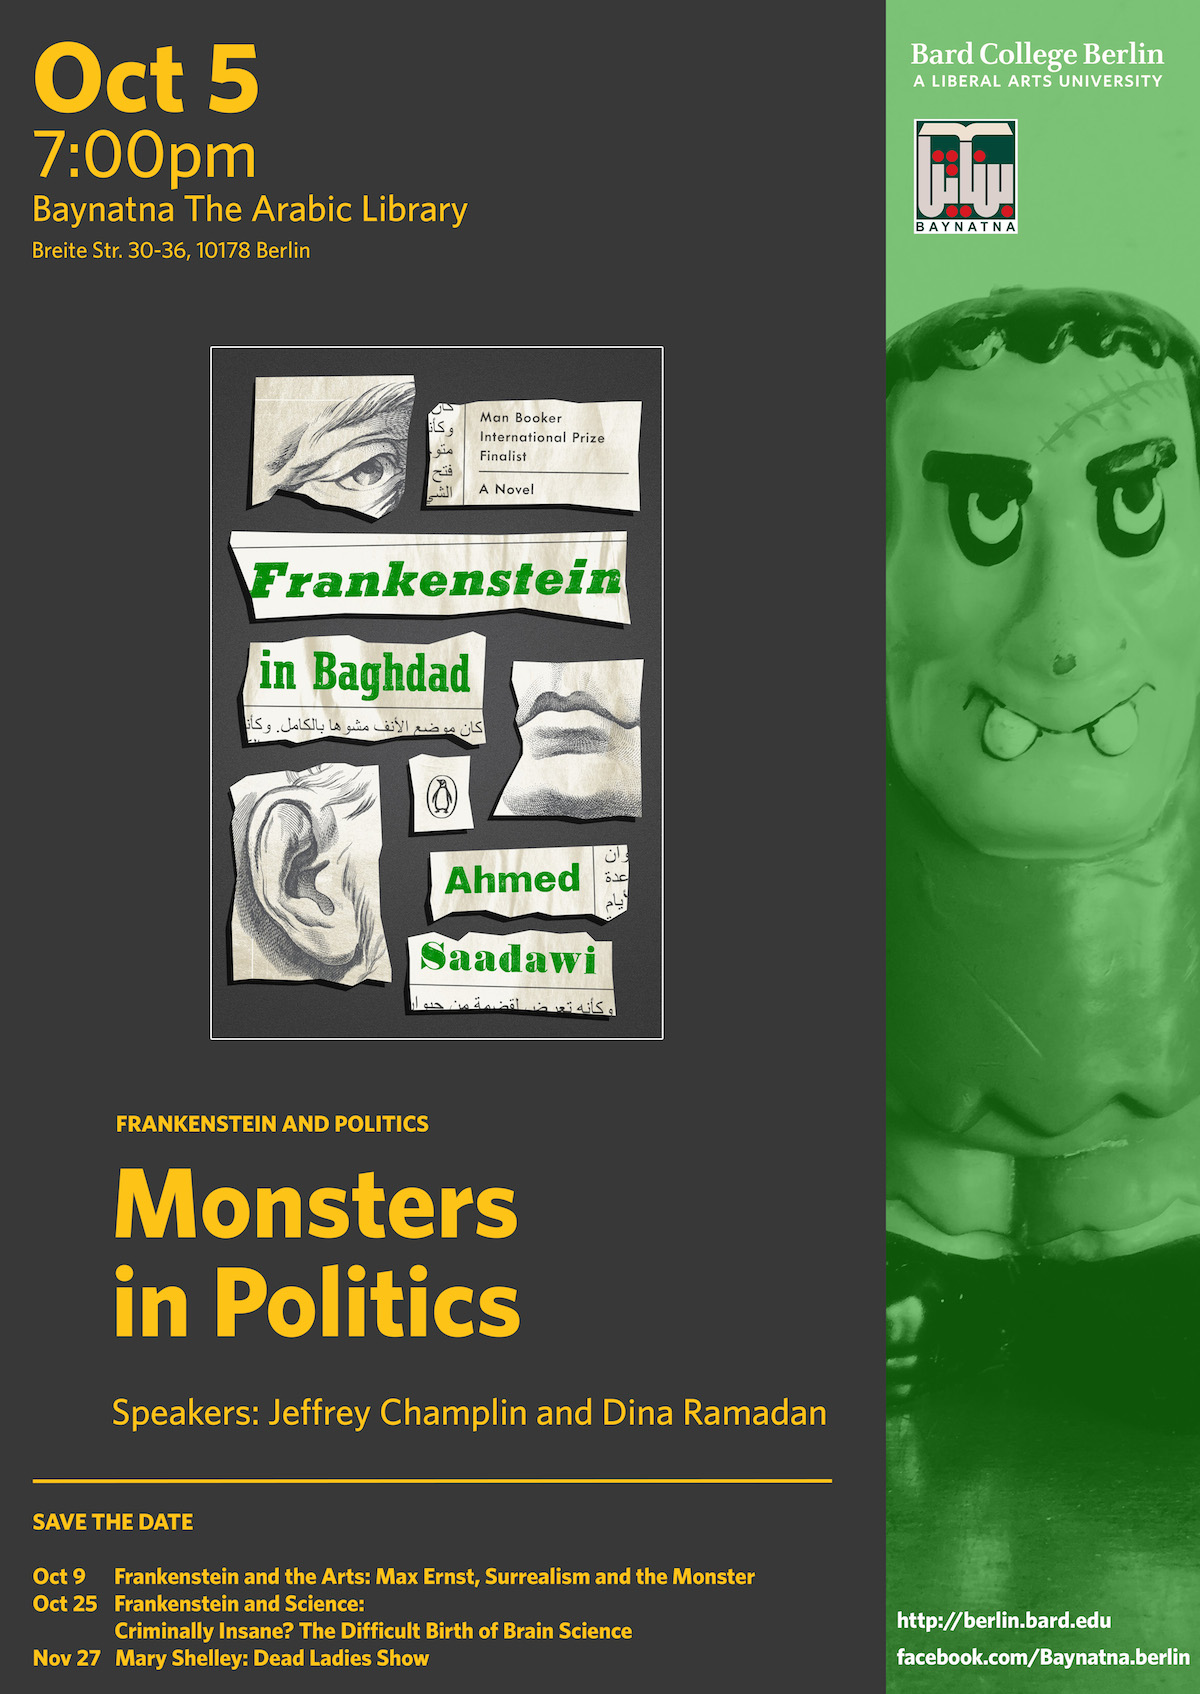 Frankenstein / Eine Uni ein Buch: Monsters in Politics